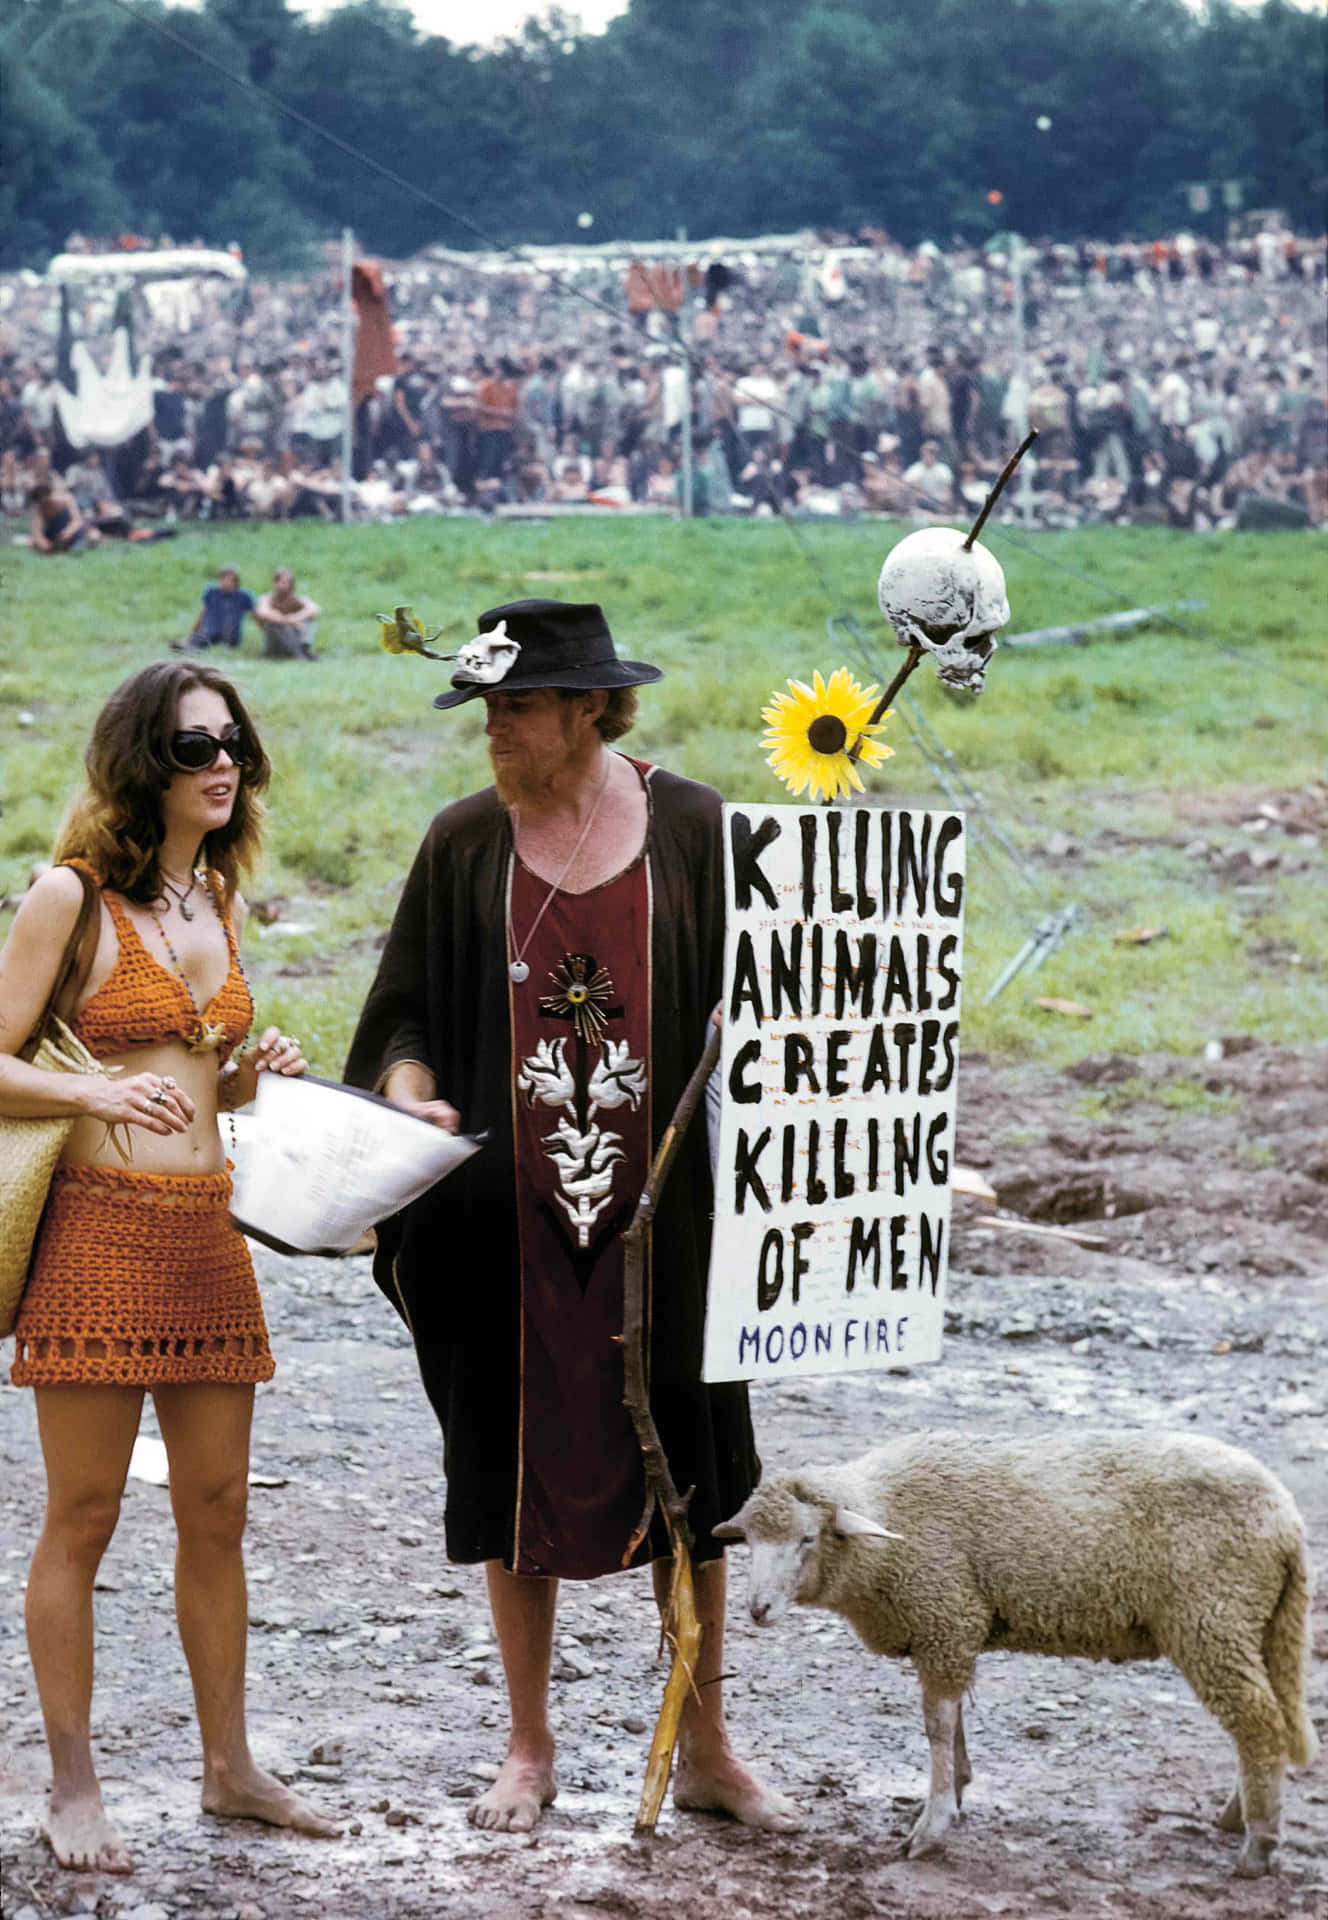 Musica,pace E Amore - Il Festival Di Woodstock Del 1969